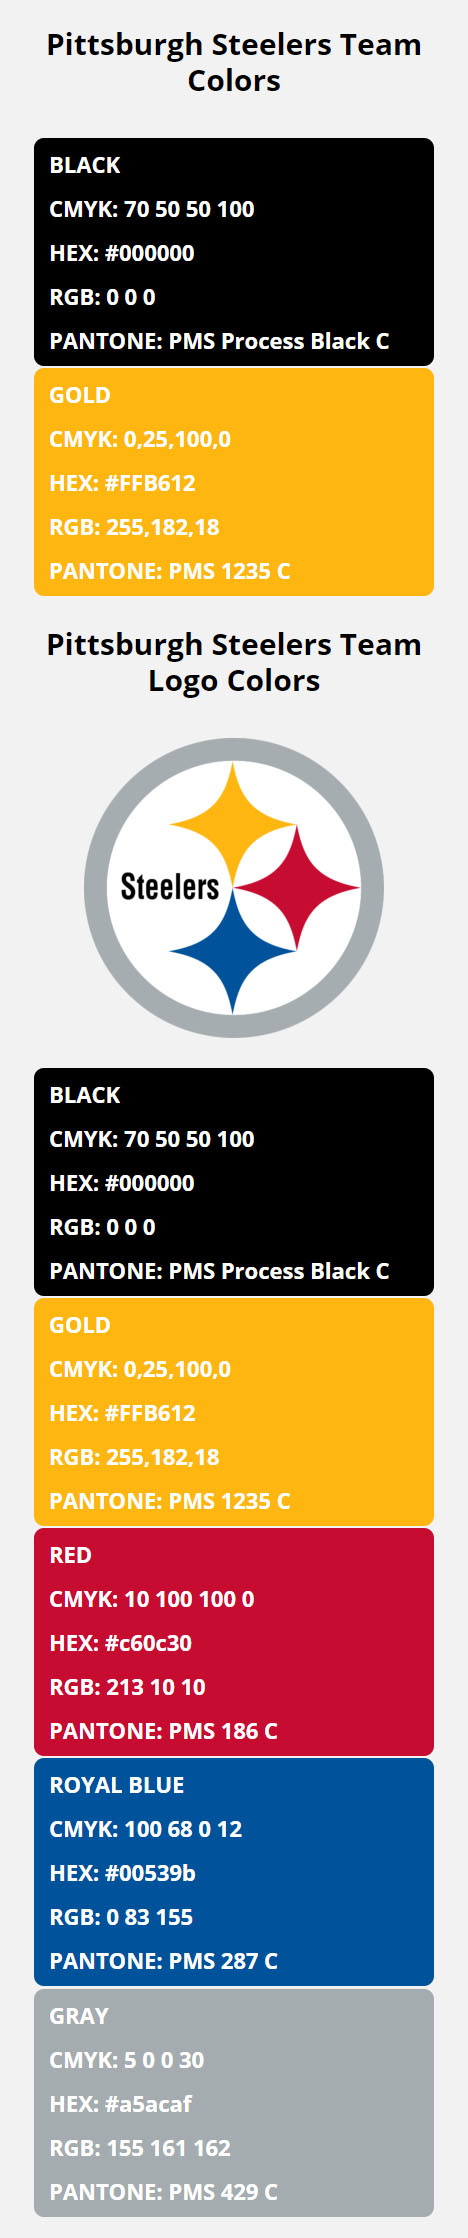 Pittsburgh Steelers Team Colors | HEX, RGB, CMYK, PANTONE COLOR CODES